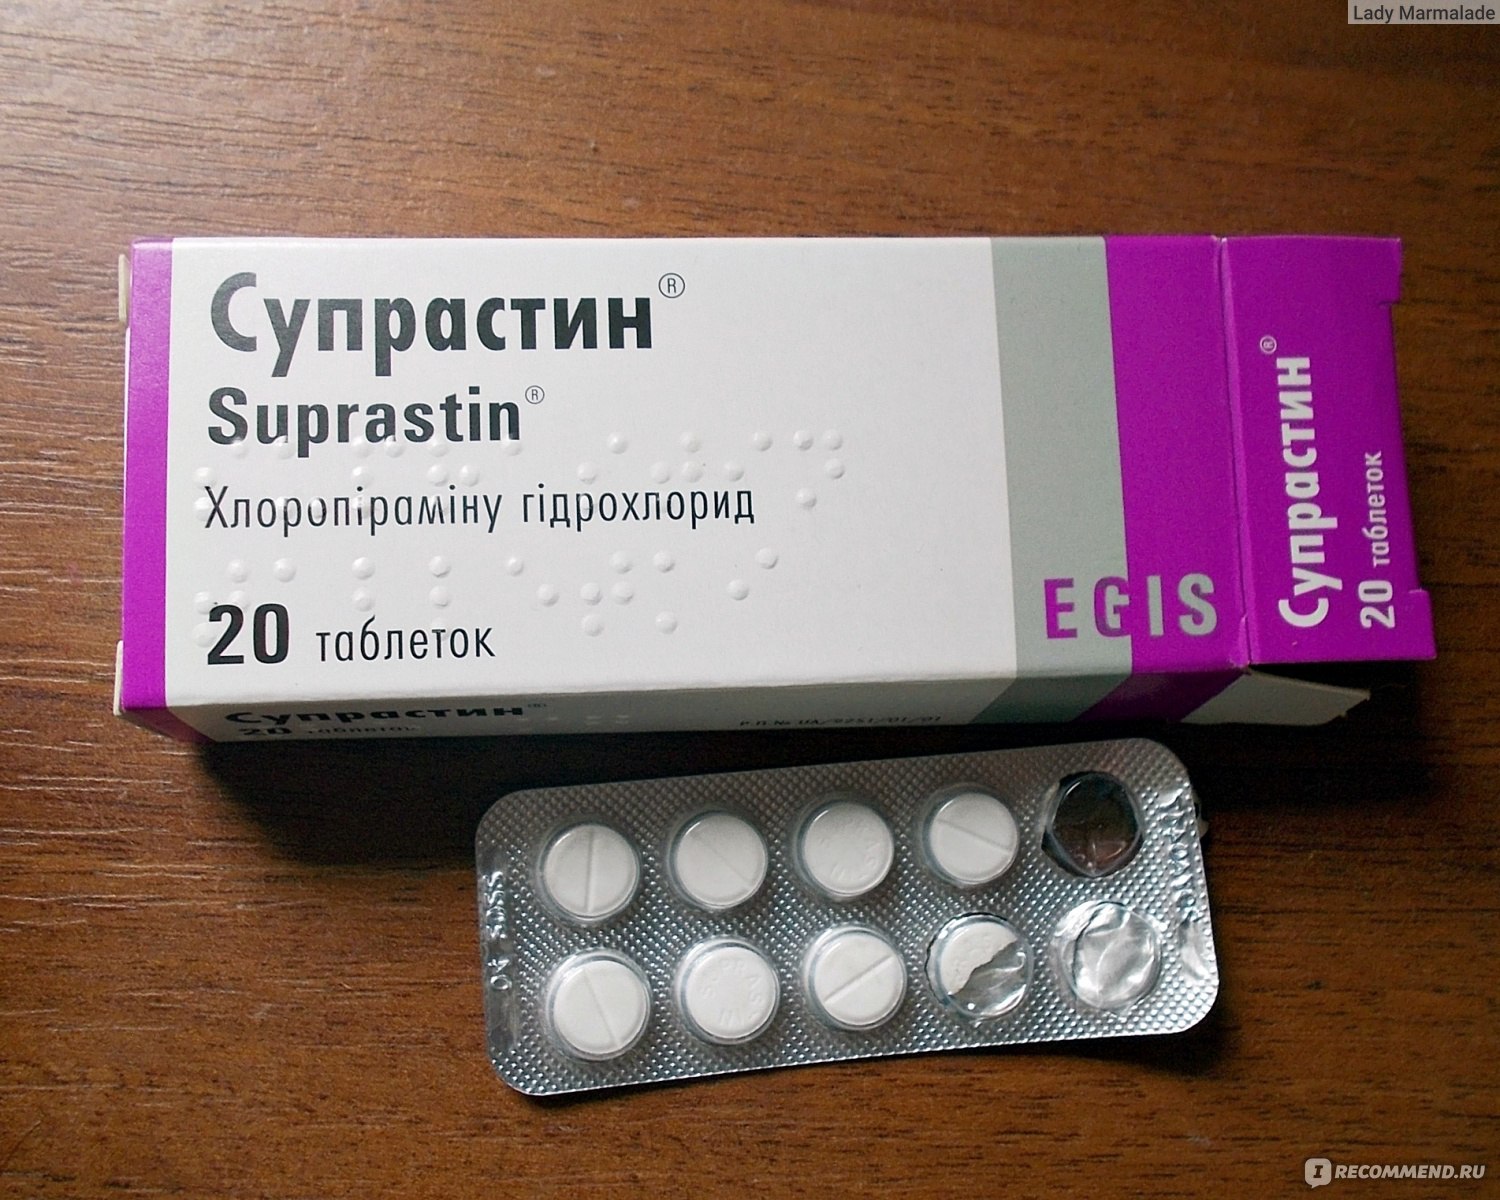 Средства для лечения аллергии ЭГИС Супрастин - «Супрастин в таблетках .